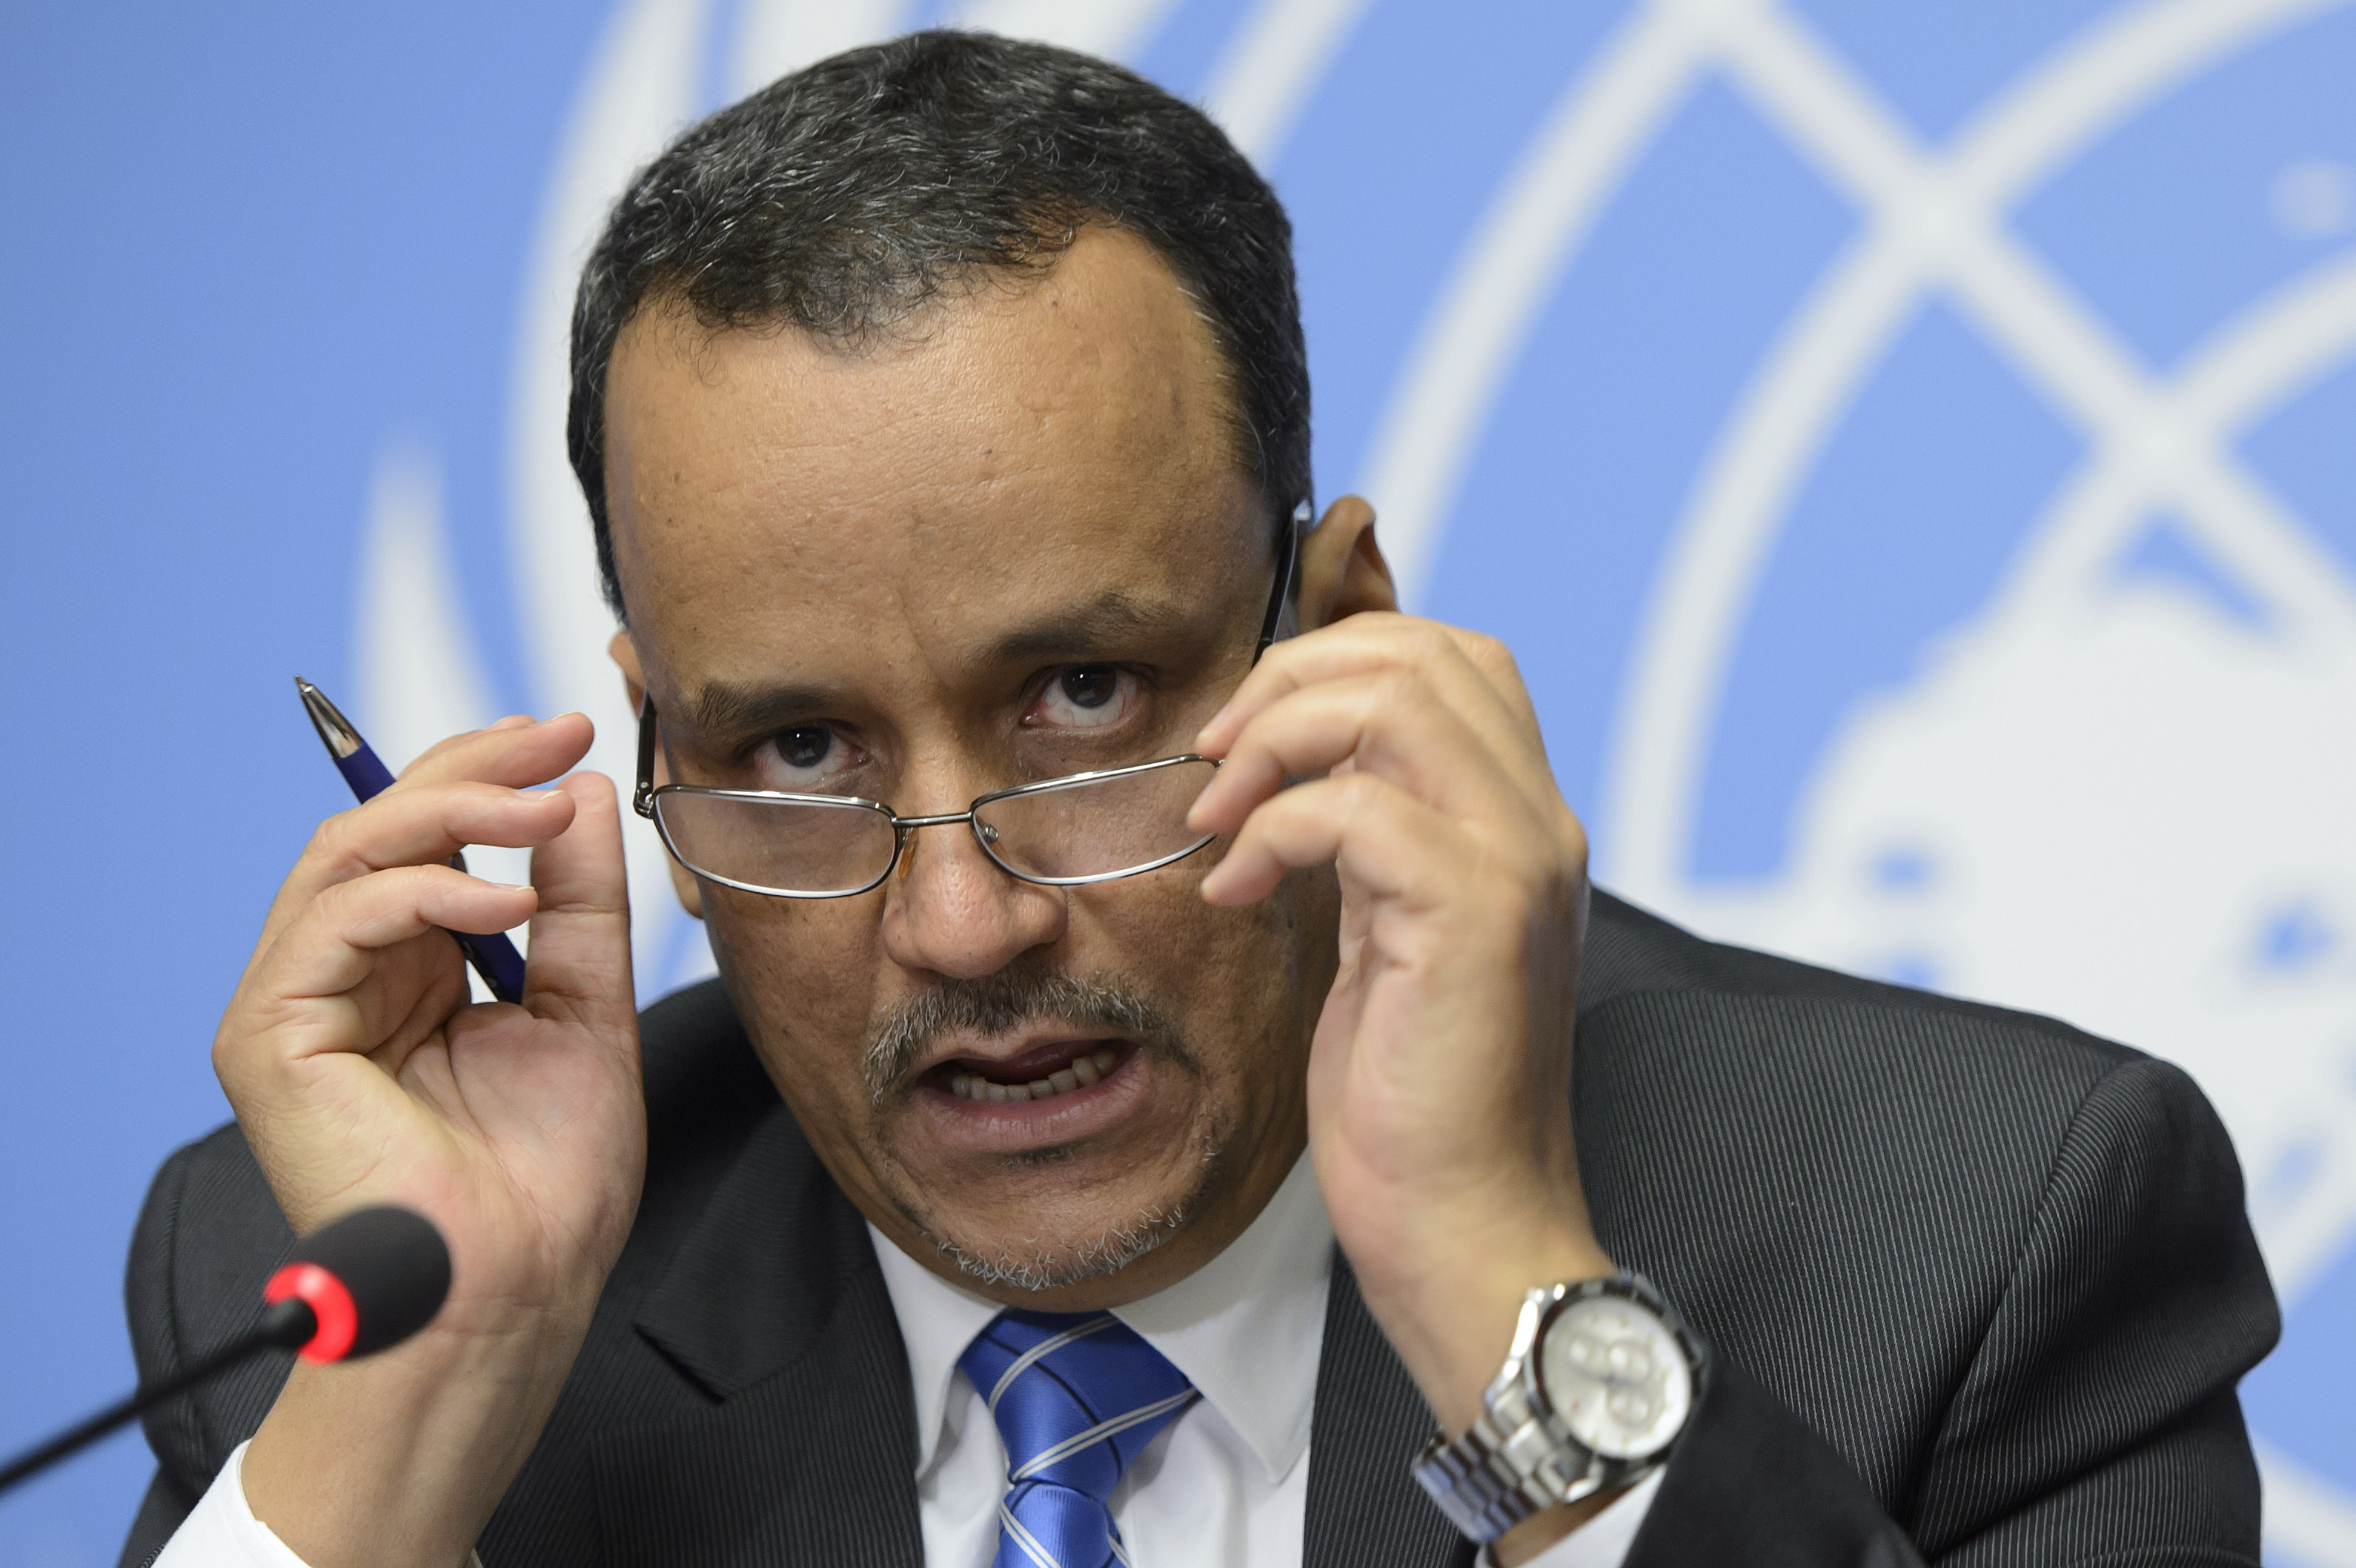 المبعوث الأممي يصف مشاورات السلام اليمنية بأنها بناءة وتعد بتقدم مهم